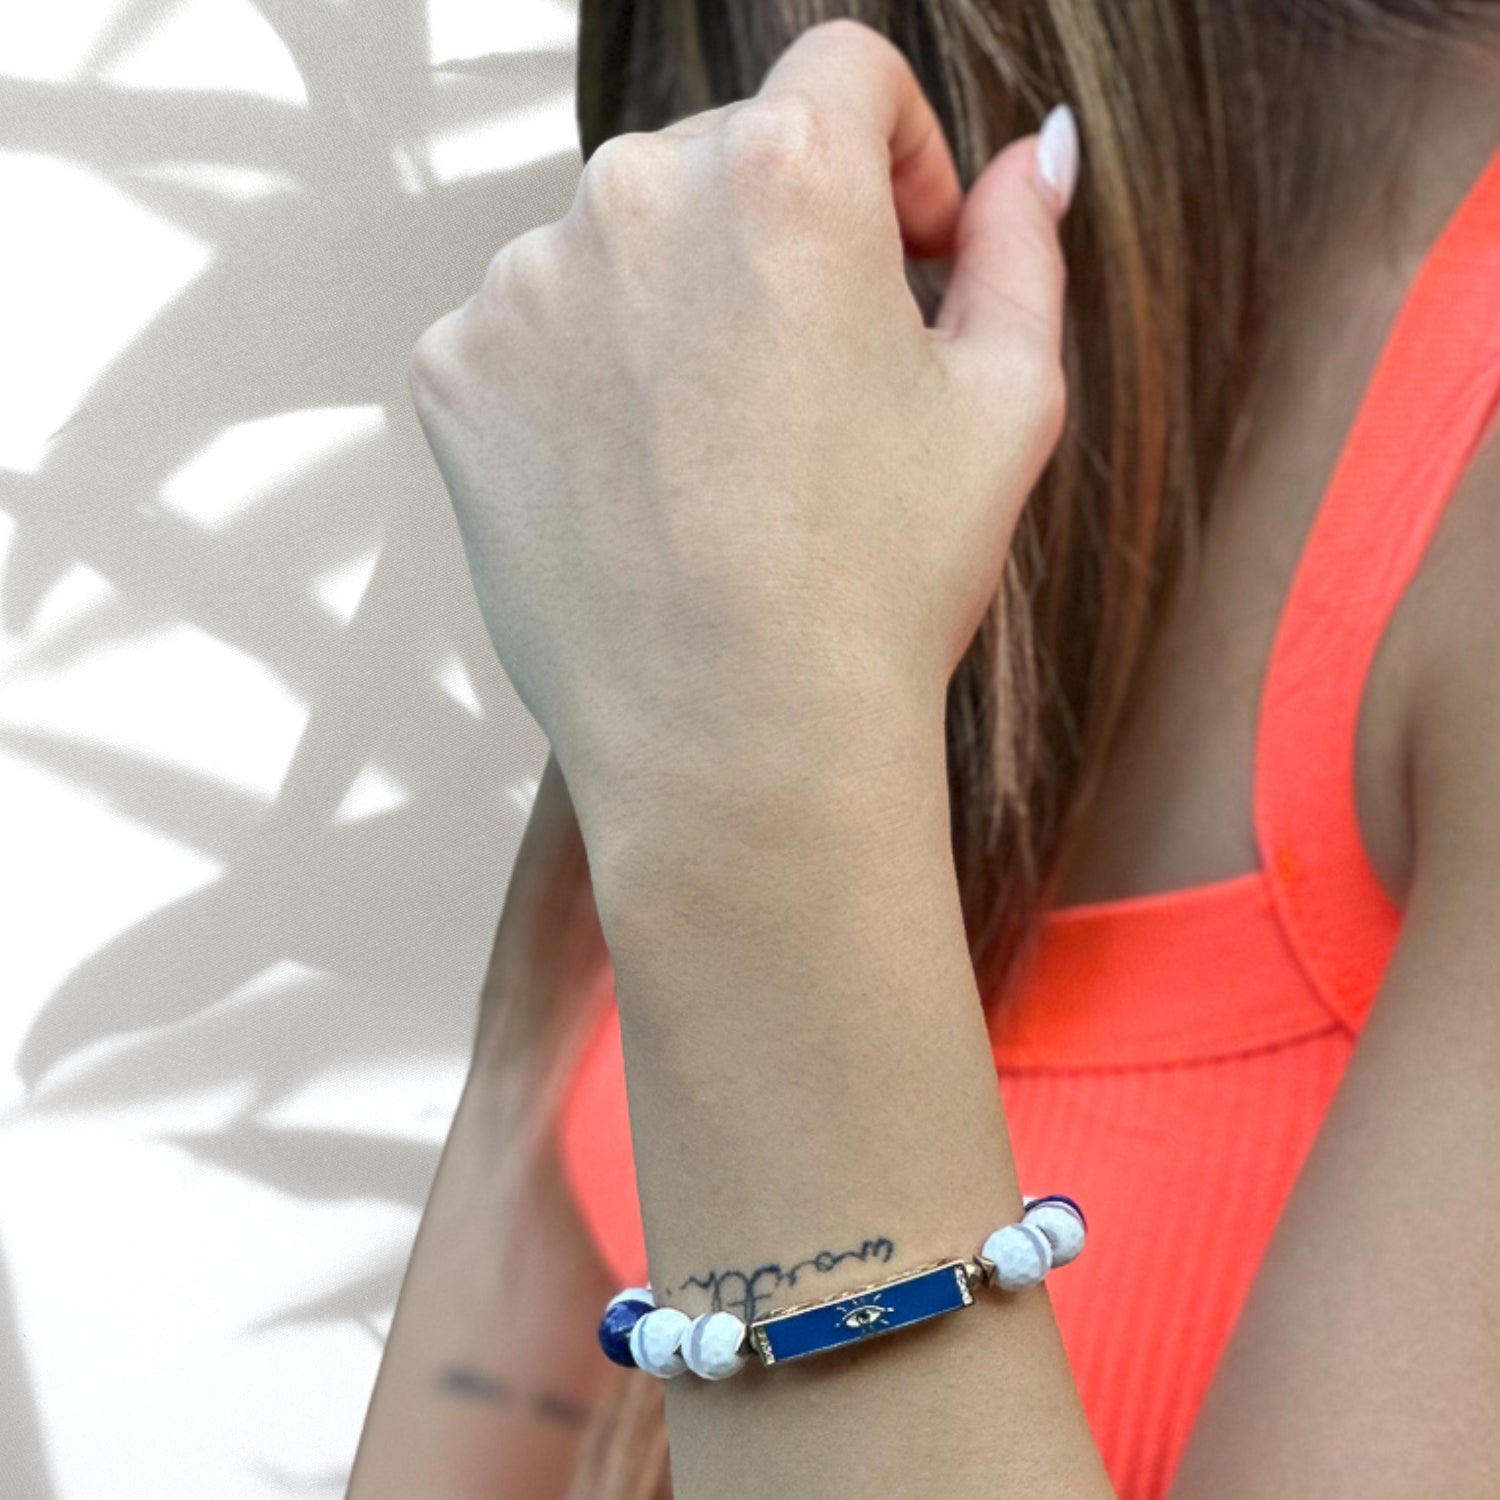 Close-up of Blue Amulet Bracelet with white jade gemstones and evil eye charm, modeled on wrist